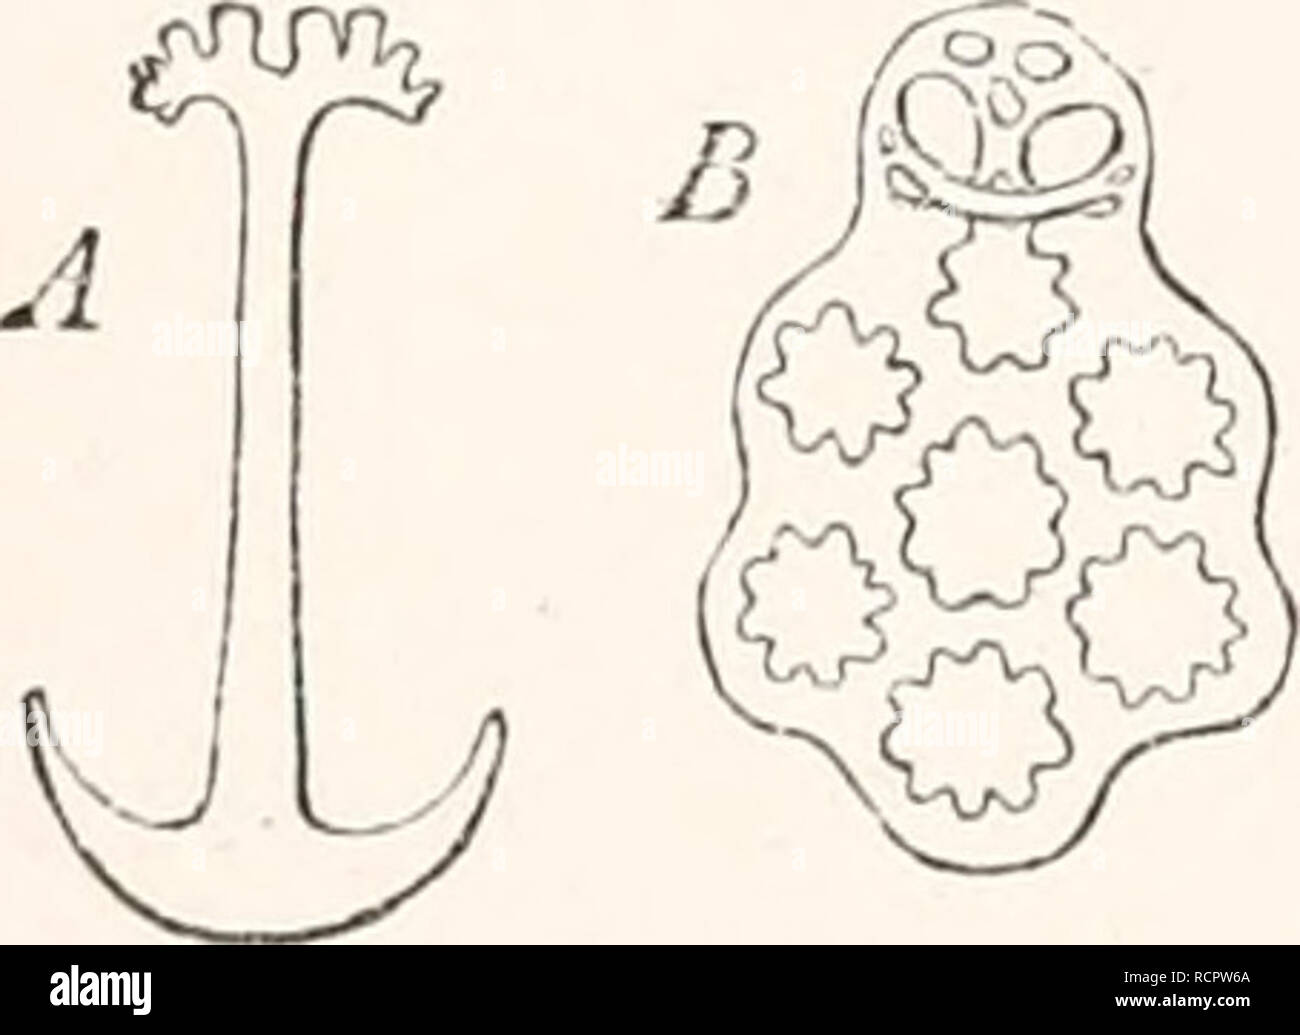 . Elemente der vergleichenden Anatomie. Anatomie, Vergleichende. Abb. 104. Pedicellaria! OfEcliiuus saxa-t i1 i s. A A FRUCHTSTIELS-Laria mit seiner Zange - Arme offen; B mit ihnen geschlossen (nach erdl). ambulacral Canal, und so zu einer Affinität mit diesem Skelett. Das Skelett der schluckfunktion Apparate in der Echino'ida und Clypeastrida ist als unabhängige Entwicklung angesehen werden; es umgibt den Beginn der Enteron, und besteht aus einer Reihe von kalkhaltigen Bausteine miteinander verbunden wie ein Gerüst. Wirbelsäule - wie Prozesse sind mit der körperdecke in der Echino'ida angeschlossen sind, sowie in Th Stockfoto